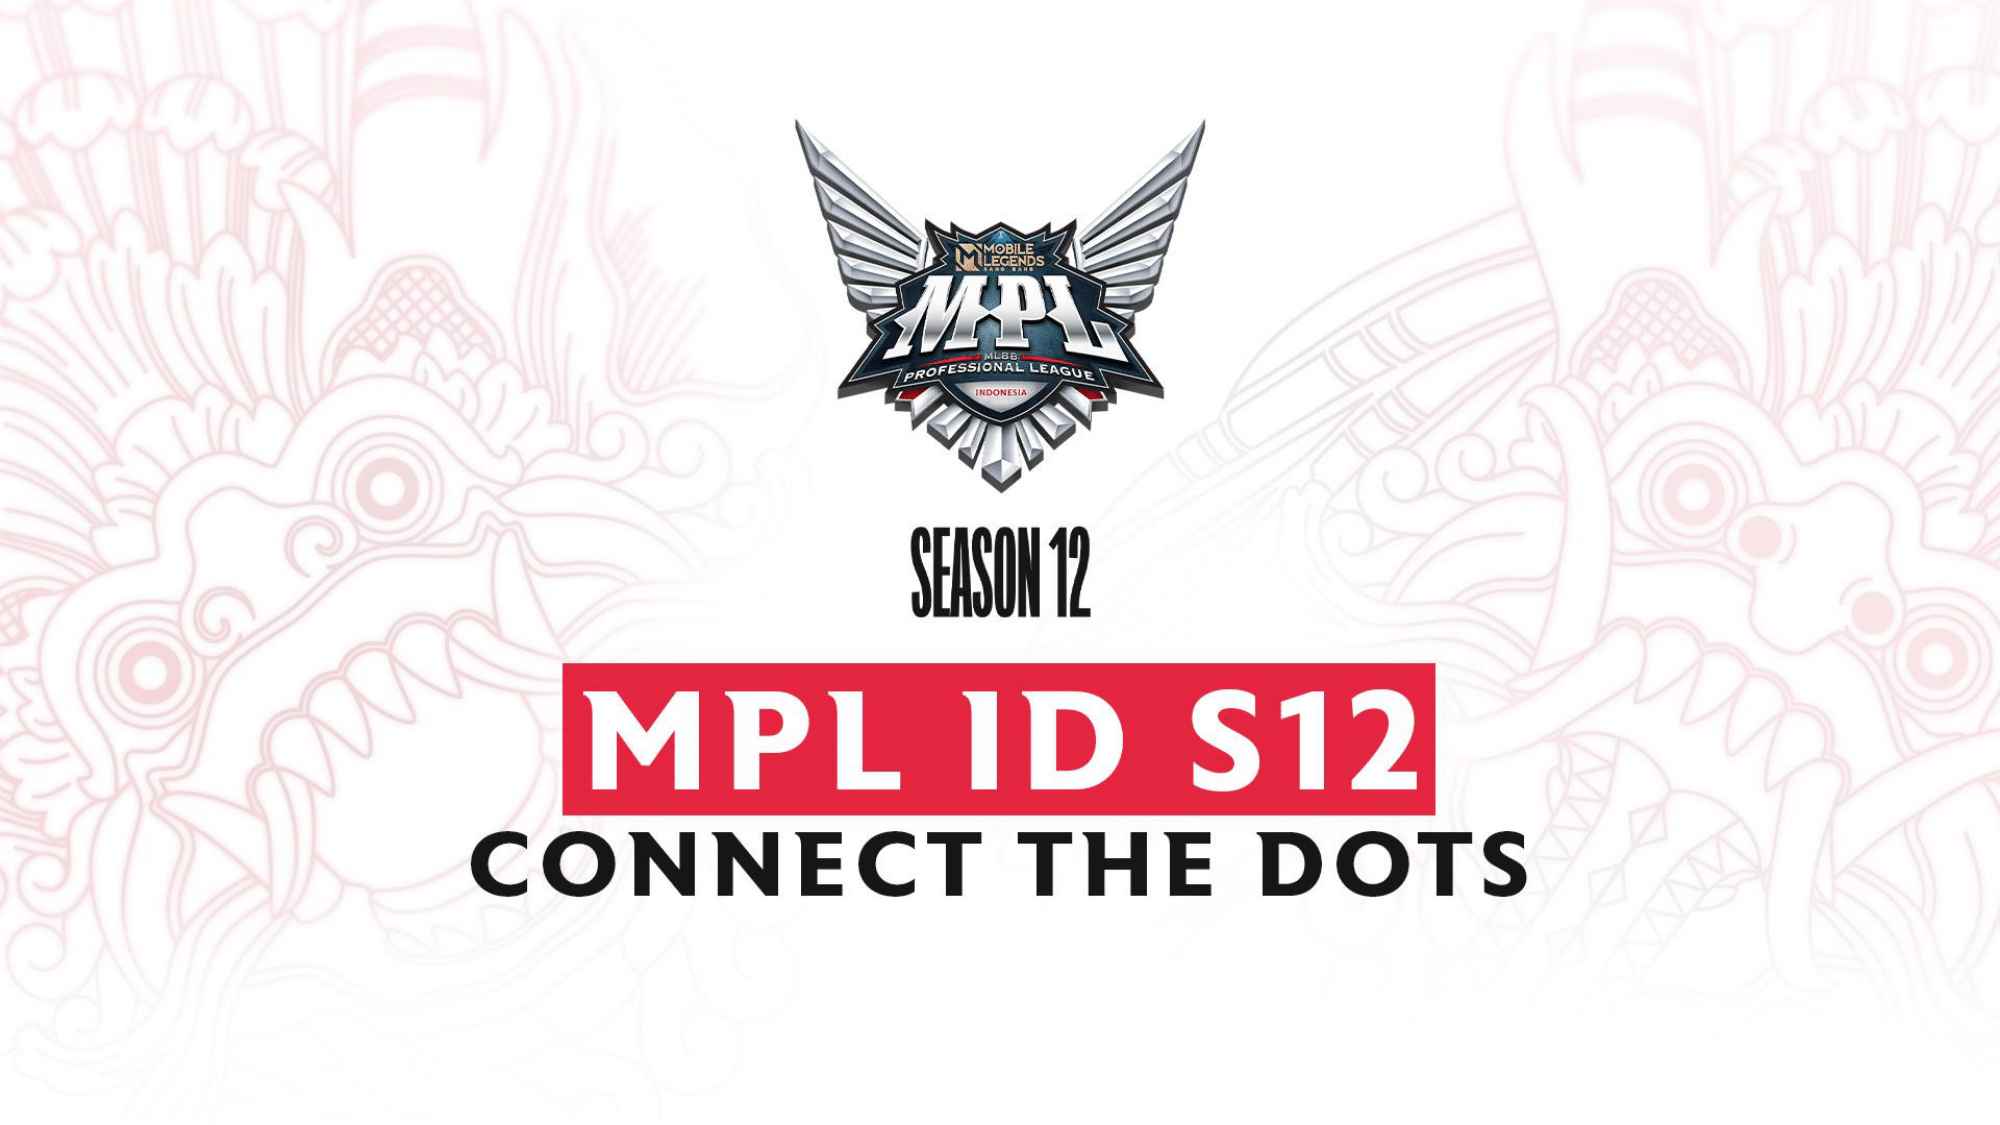 MPL ID Season 12 Hadirkan Berbagai Hal Baru! - YODU